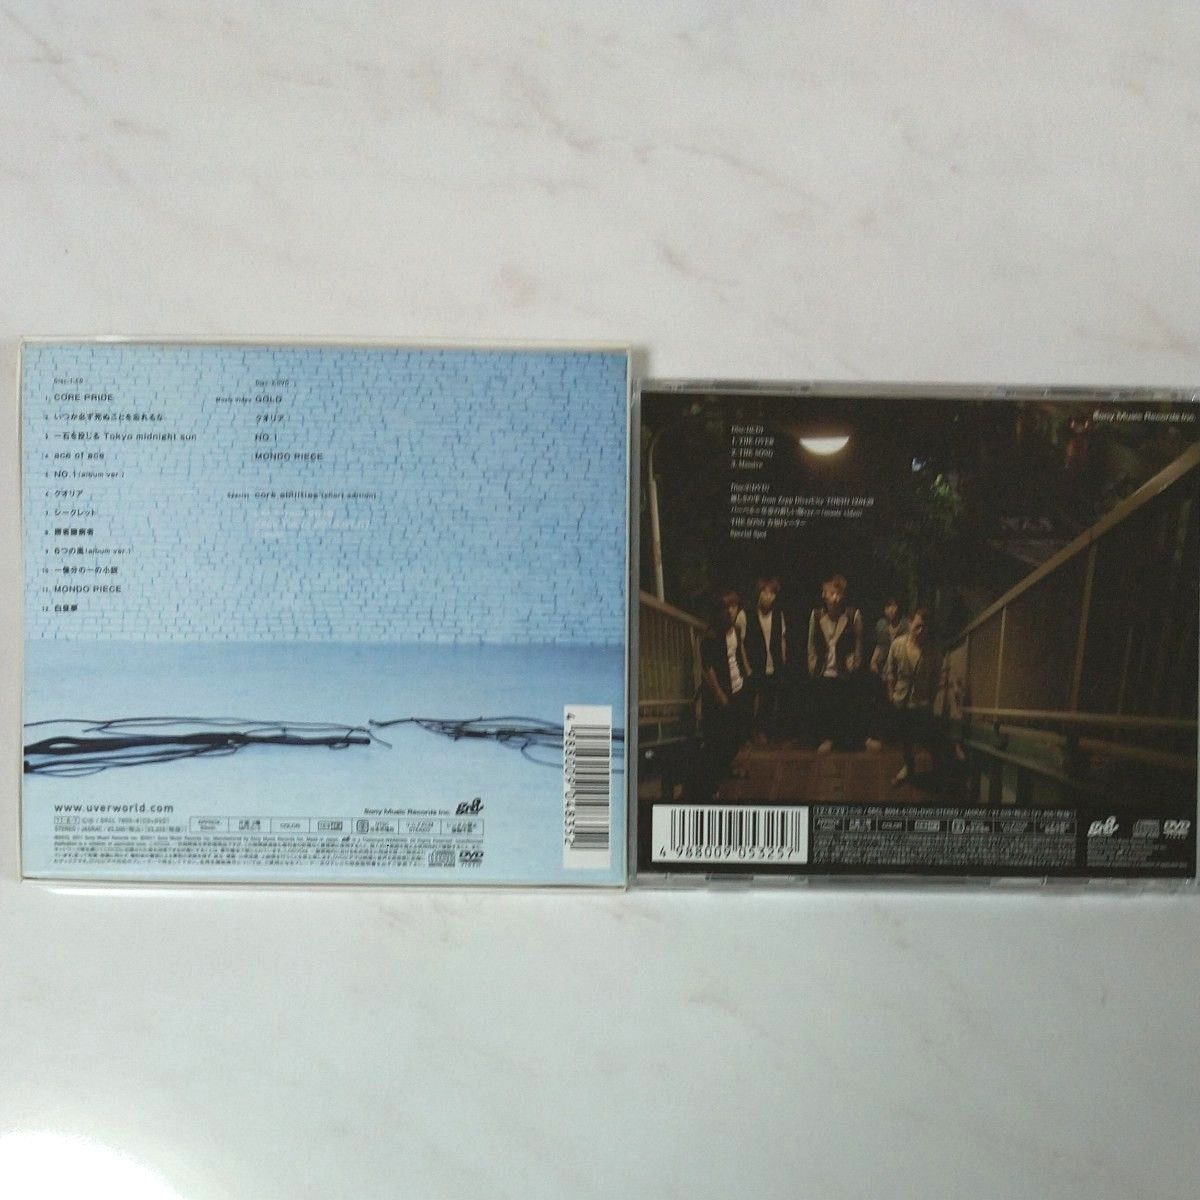 UVERworld まとめて CD DVD シングル アルバム 会報誌 セット ウーバー